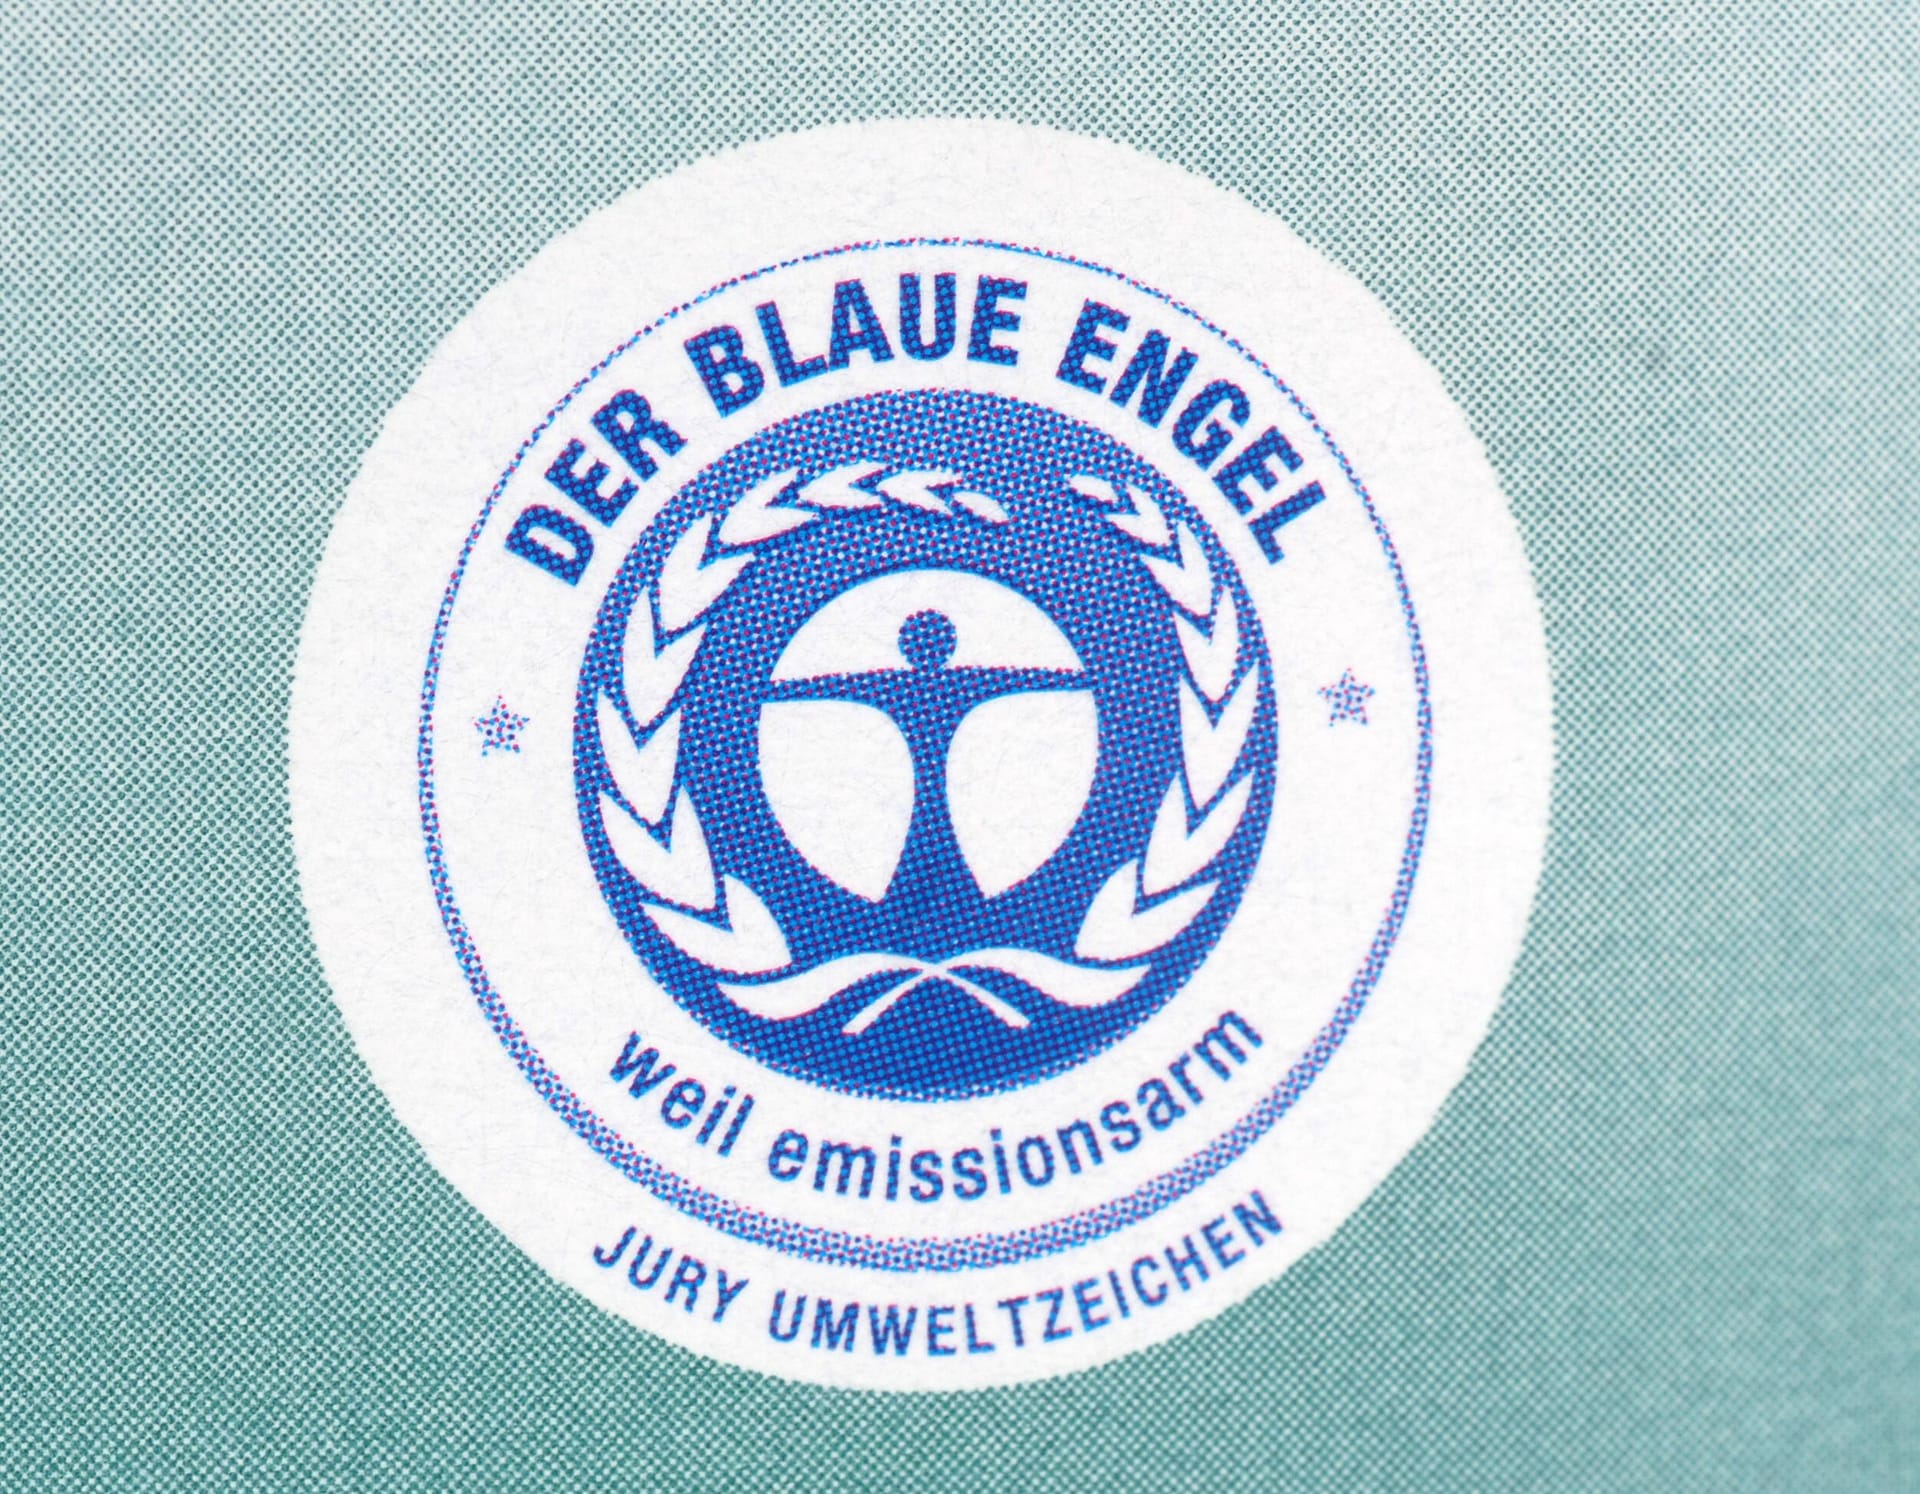 Blauer Engel: Das Umweltsiegel kennzeichnet ökologische Produkte.